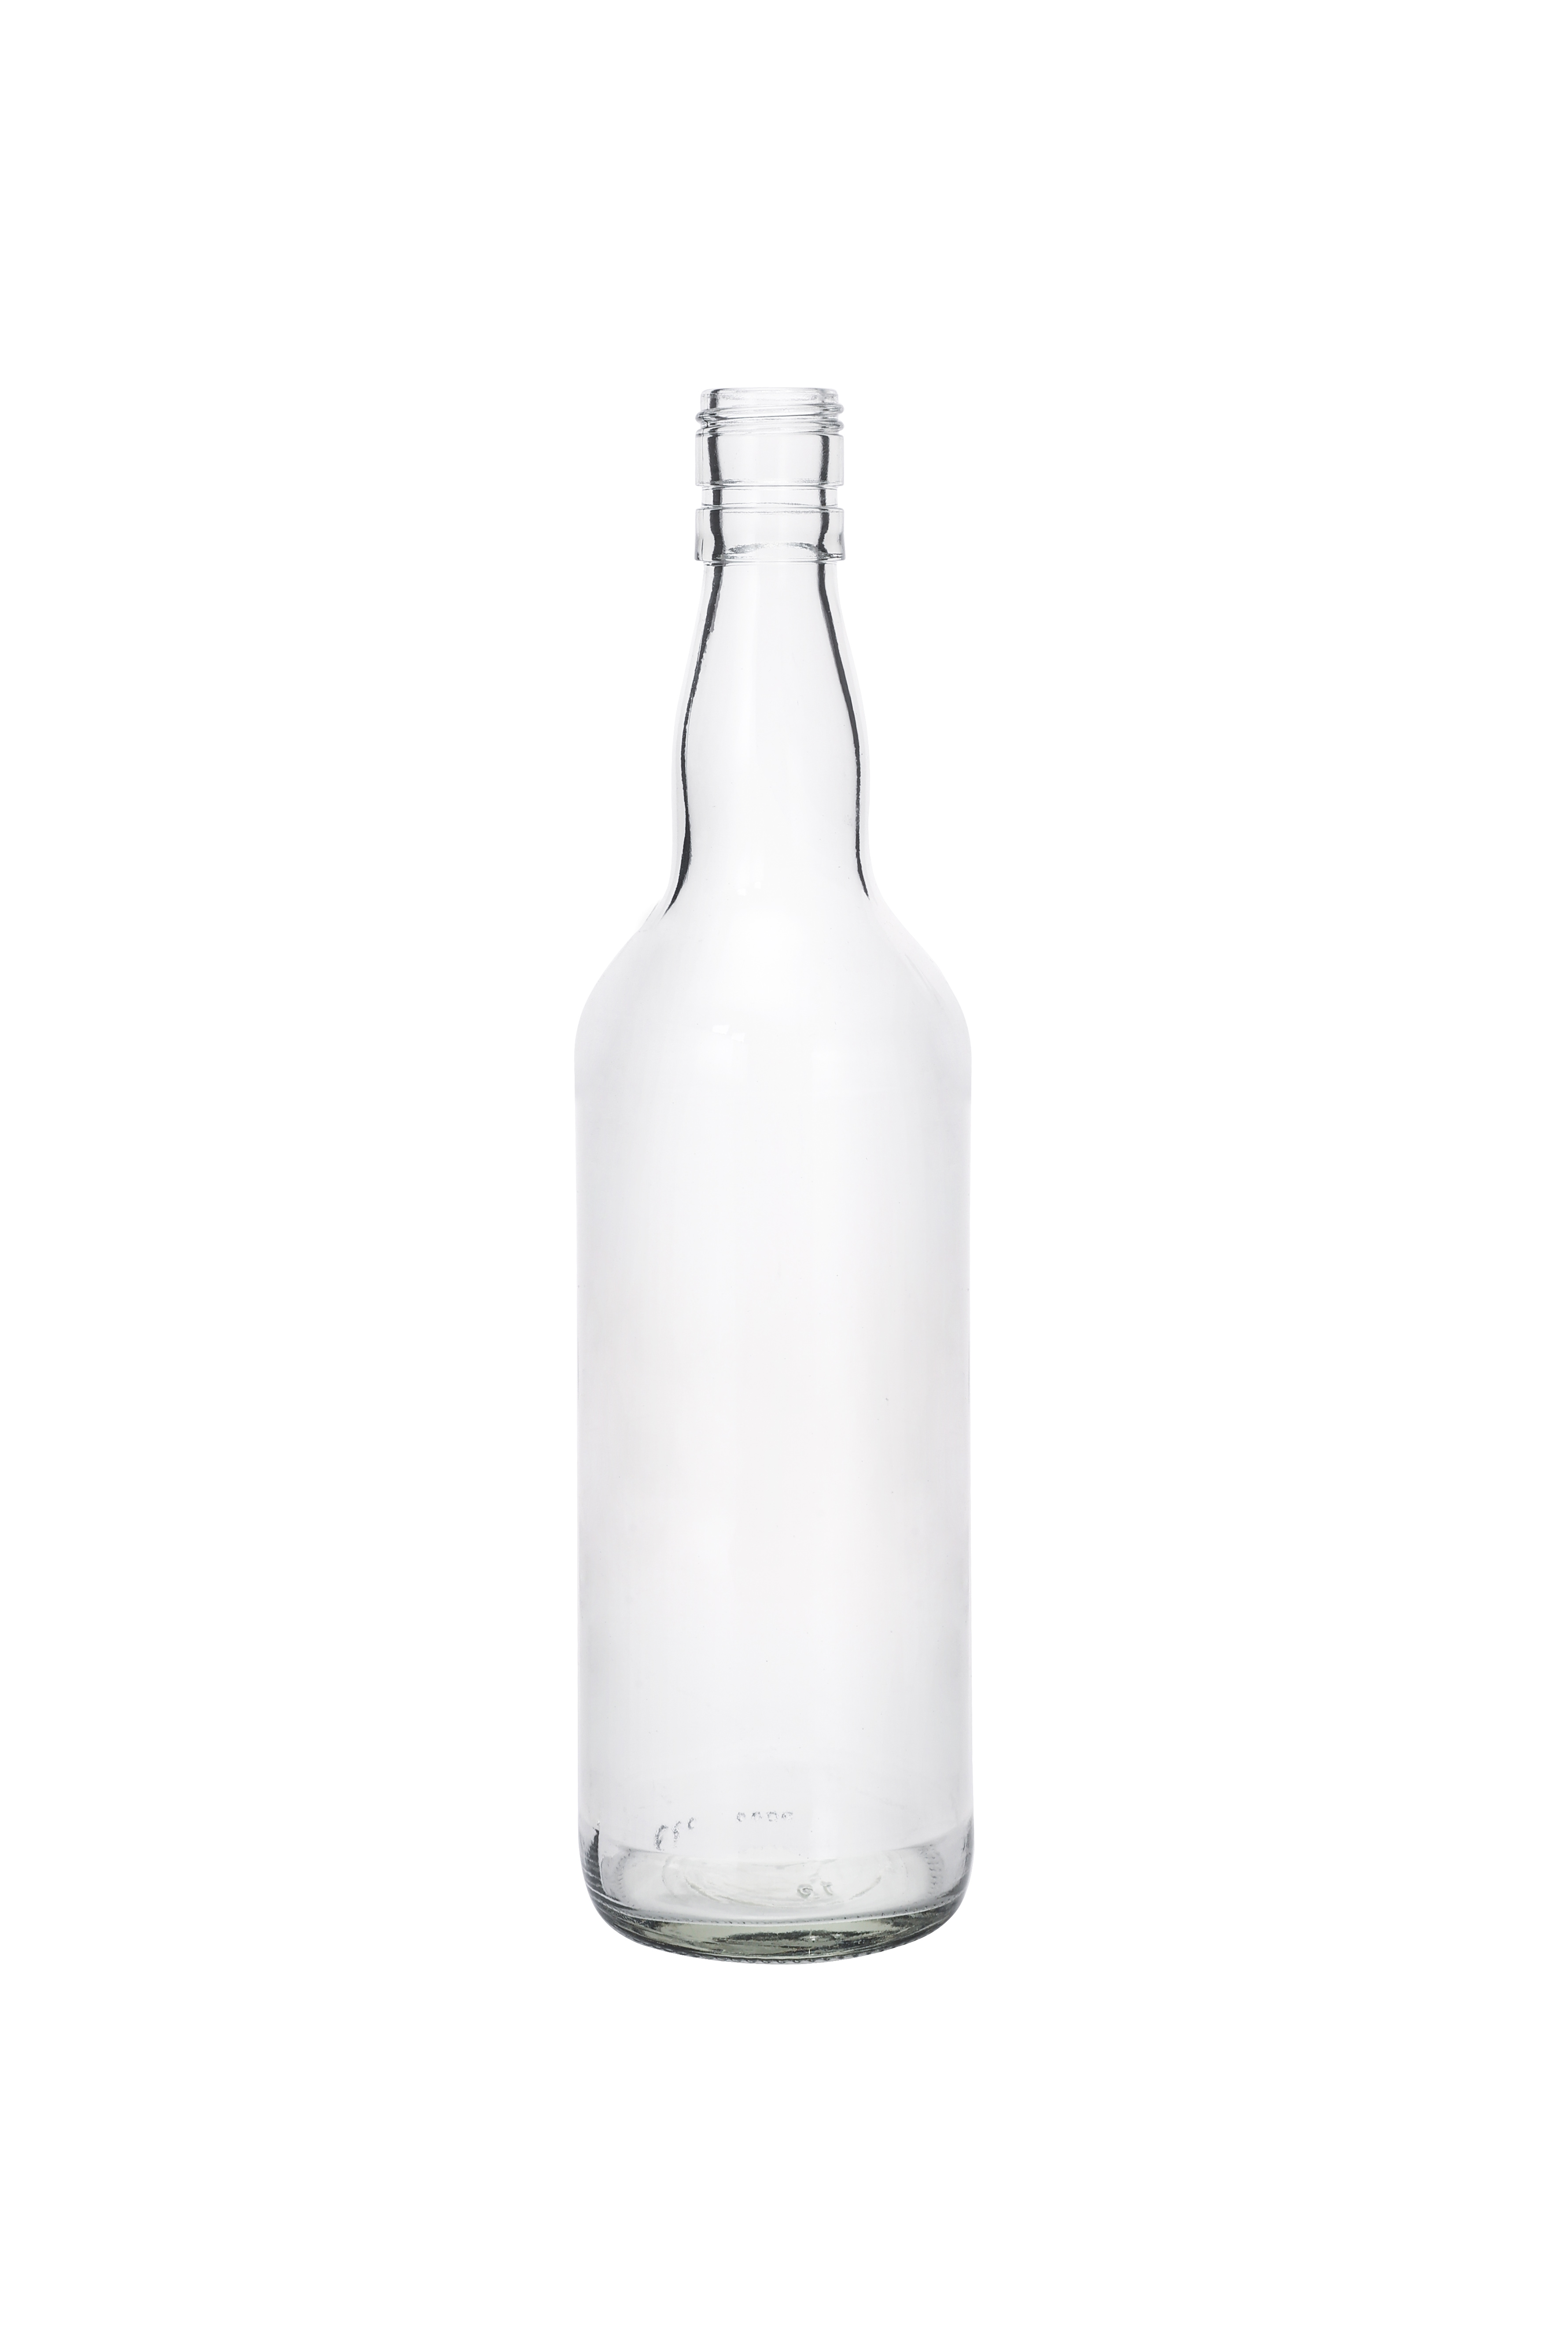  500ml 750ml Empty Glass Whisky Bottle Liquor Wine Glass Vodka Bottle with Cork